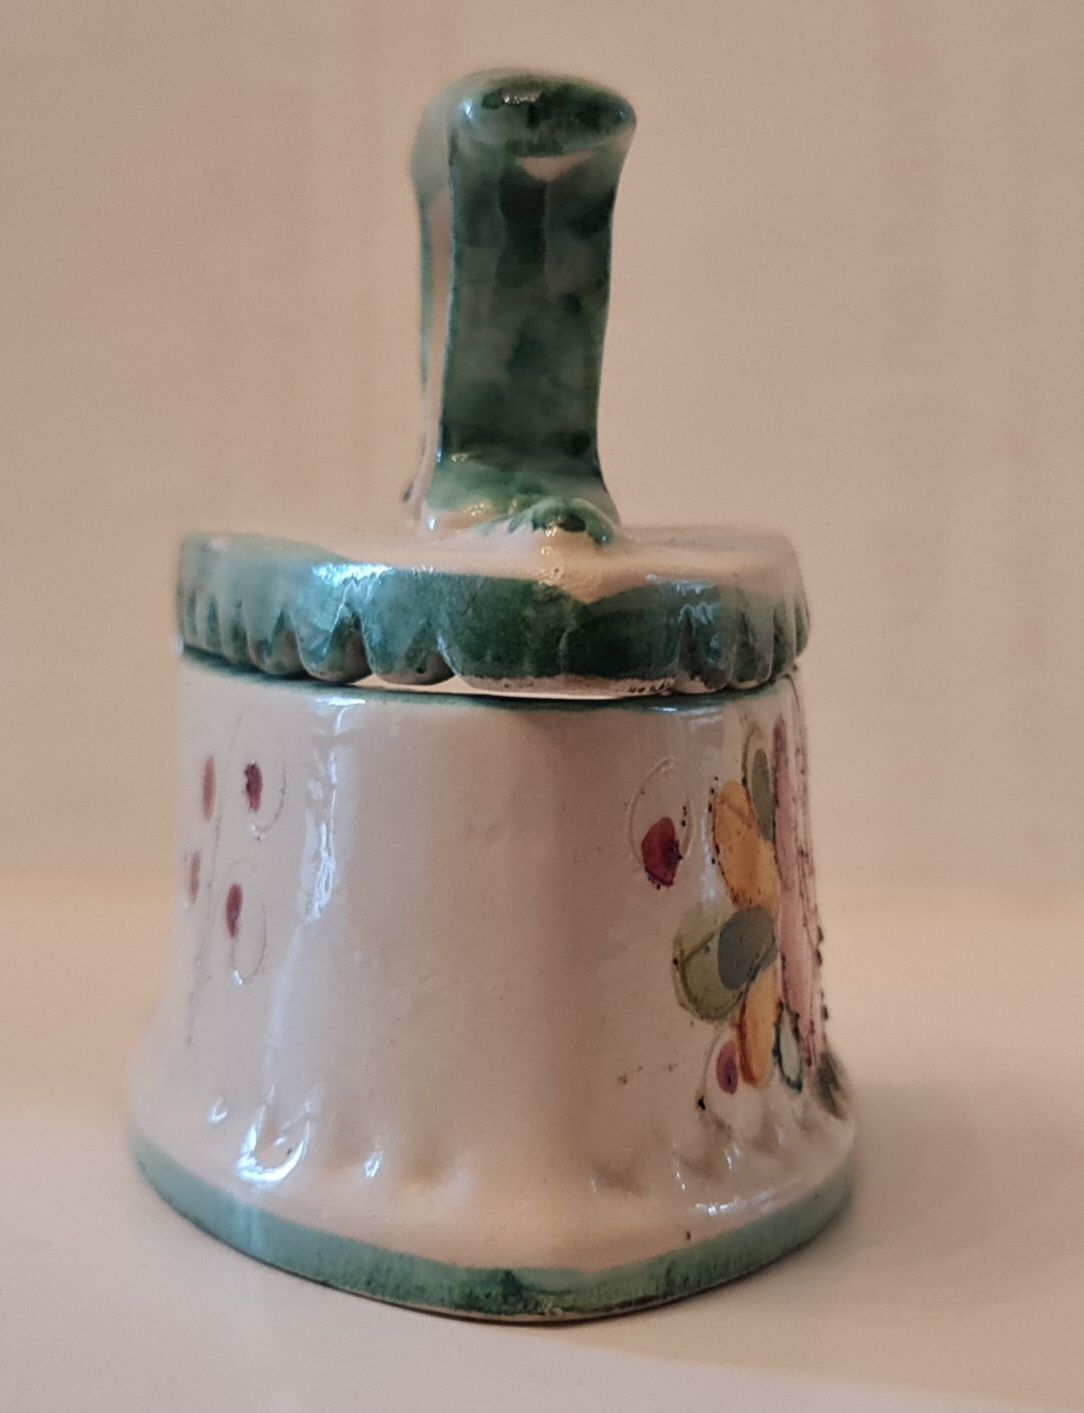 Zelazko ceramiczne Miniatura
Ręczne malowanie.
Długość 11,5 cm, wysoko